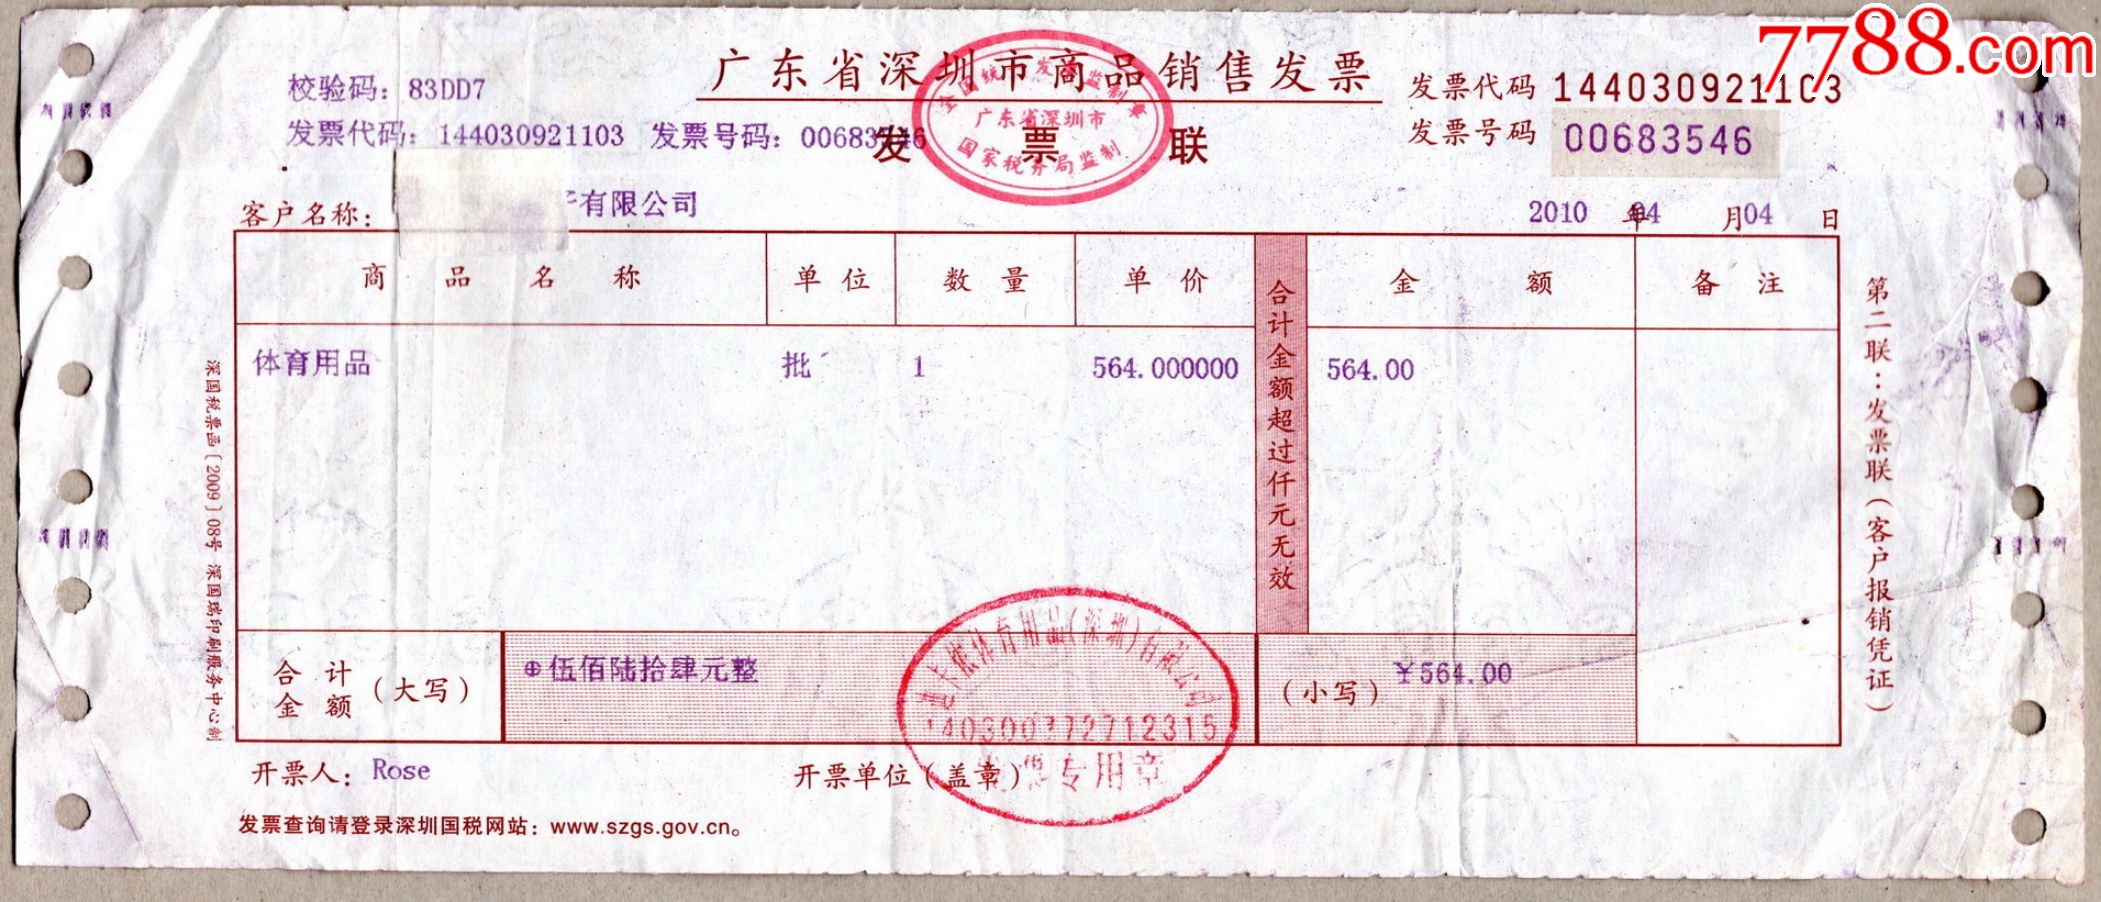 2010深圳迪卡侬decathlon运动超市发票3546